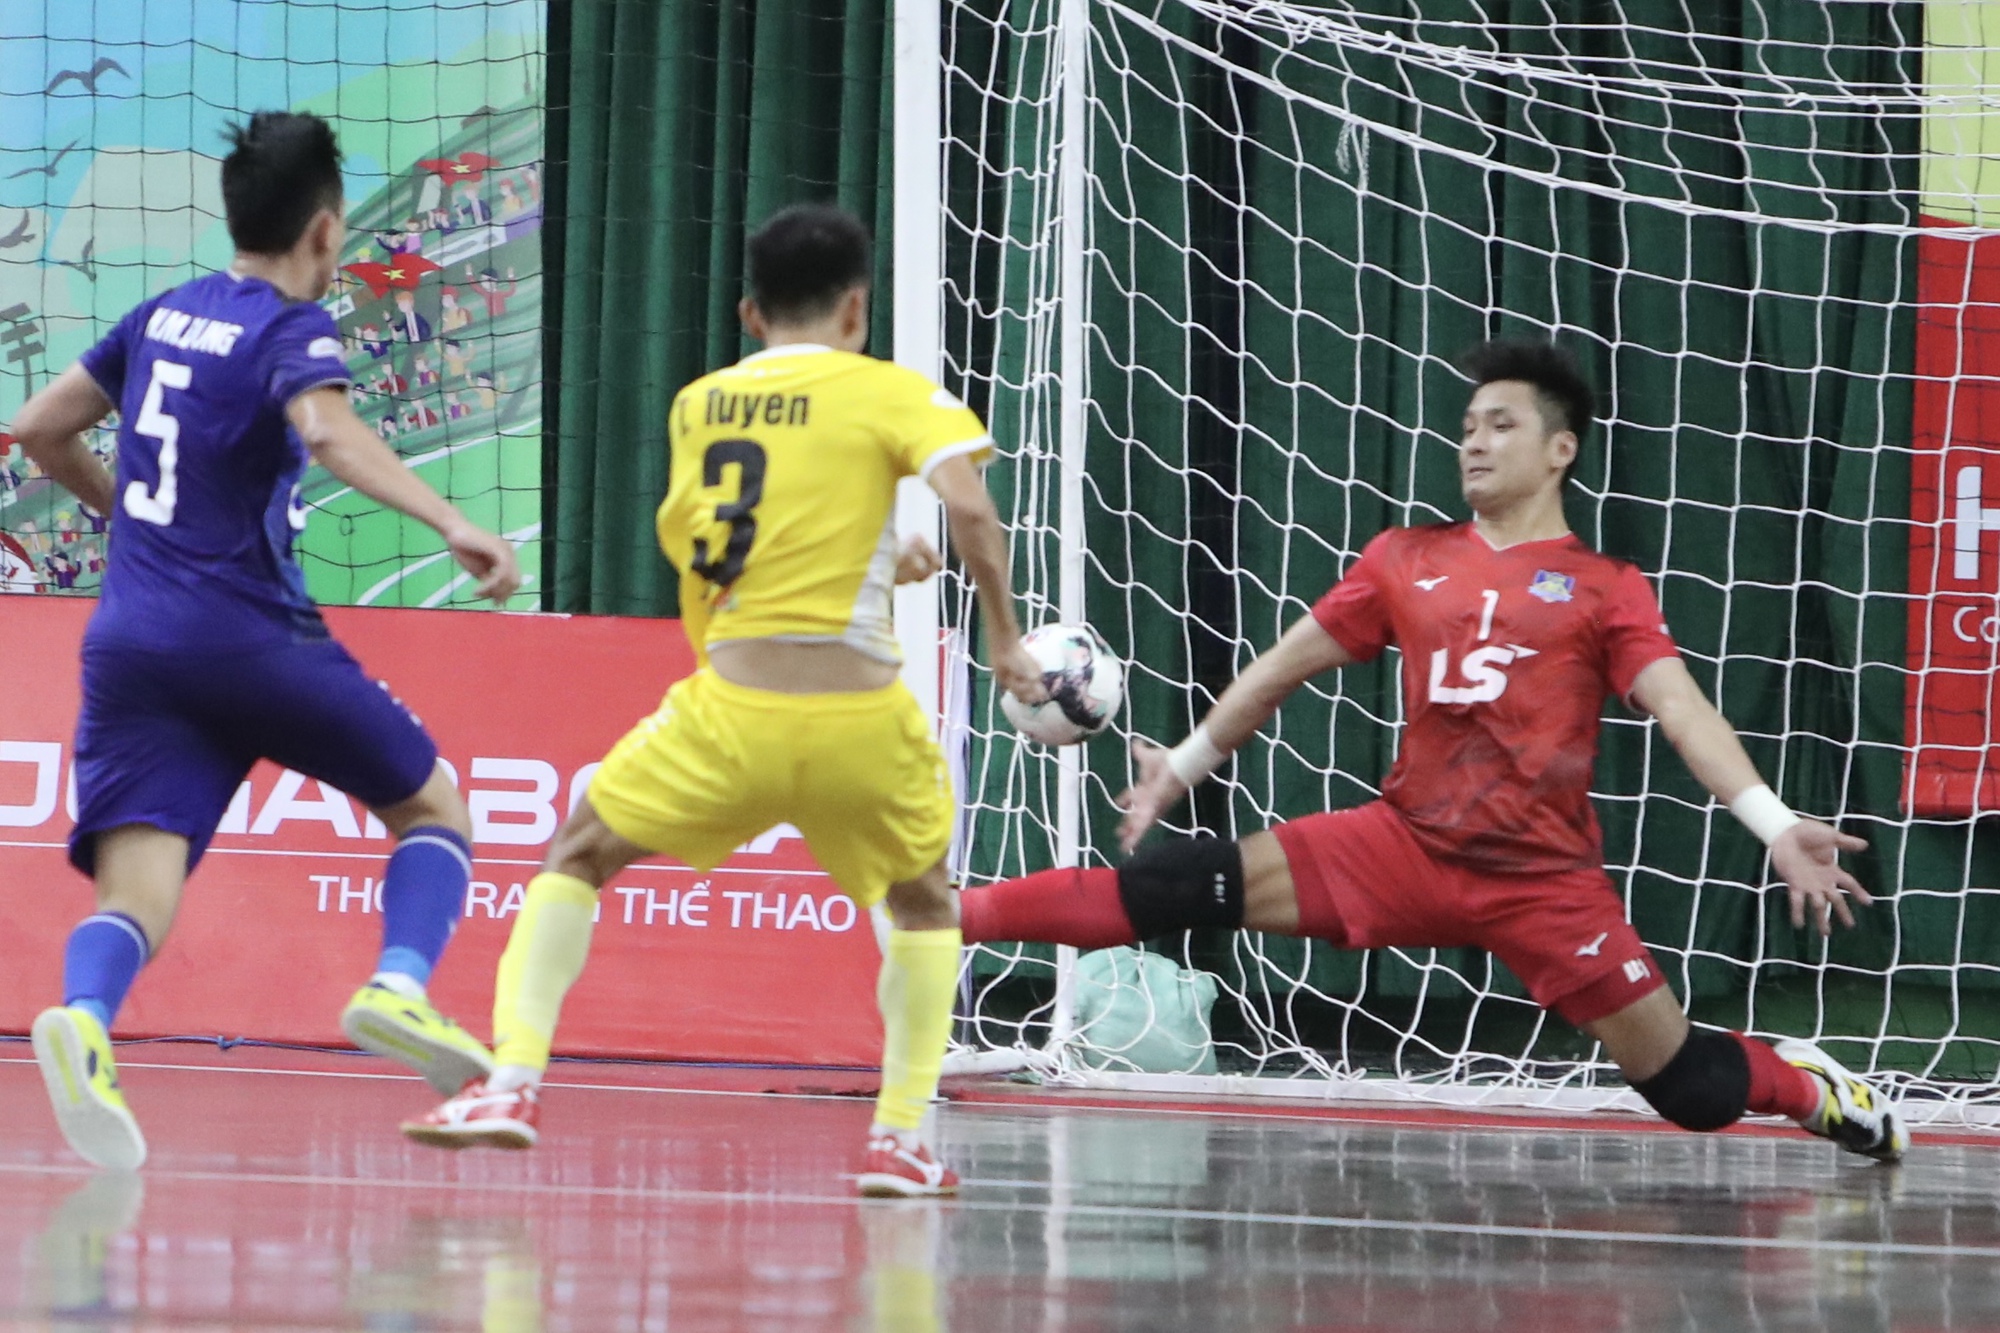 CLB Thái Sơn Nam tiếp tục trở thành cựu vương giải futsal quốc nội - Ảnh 4.